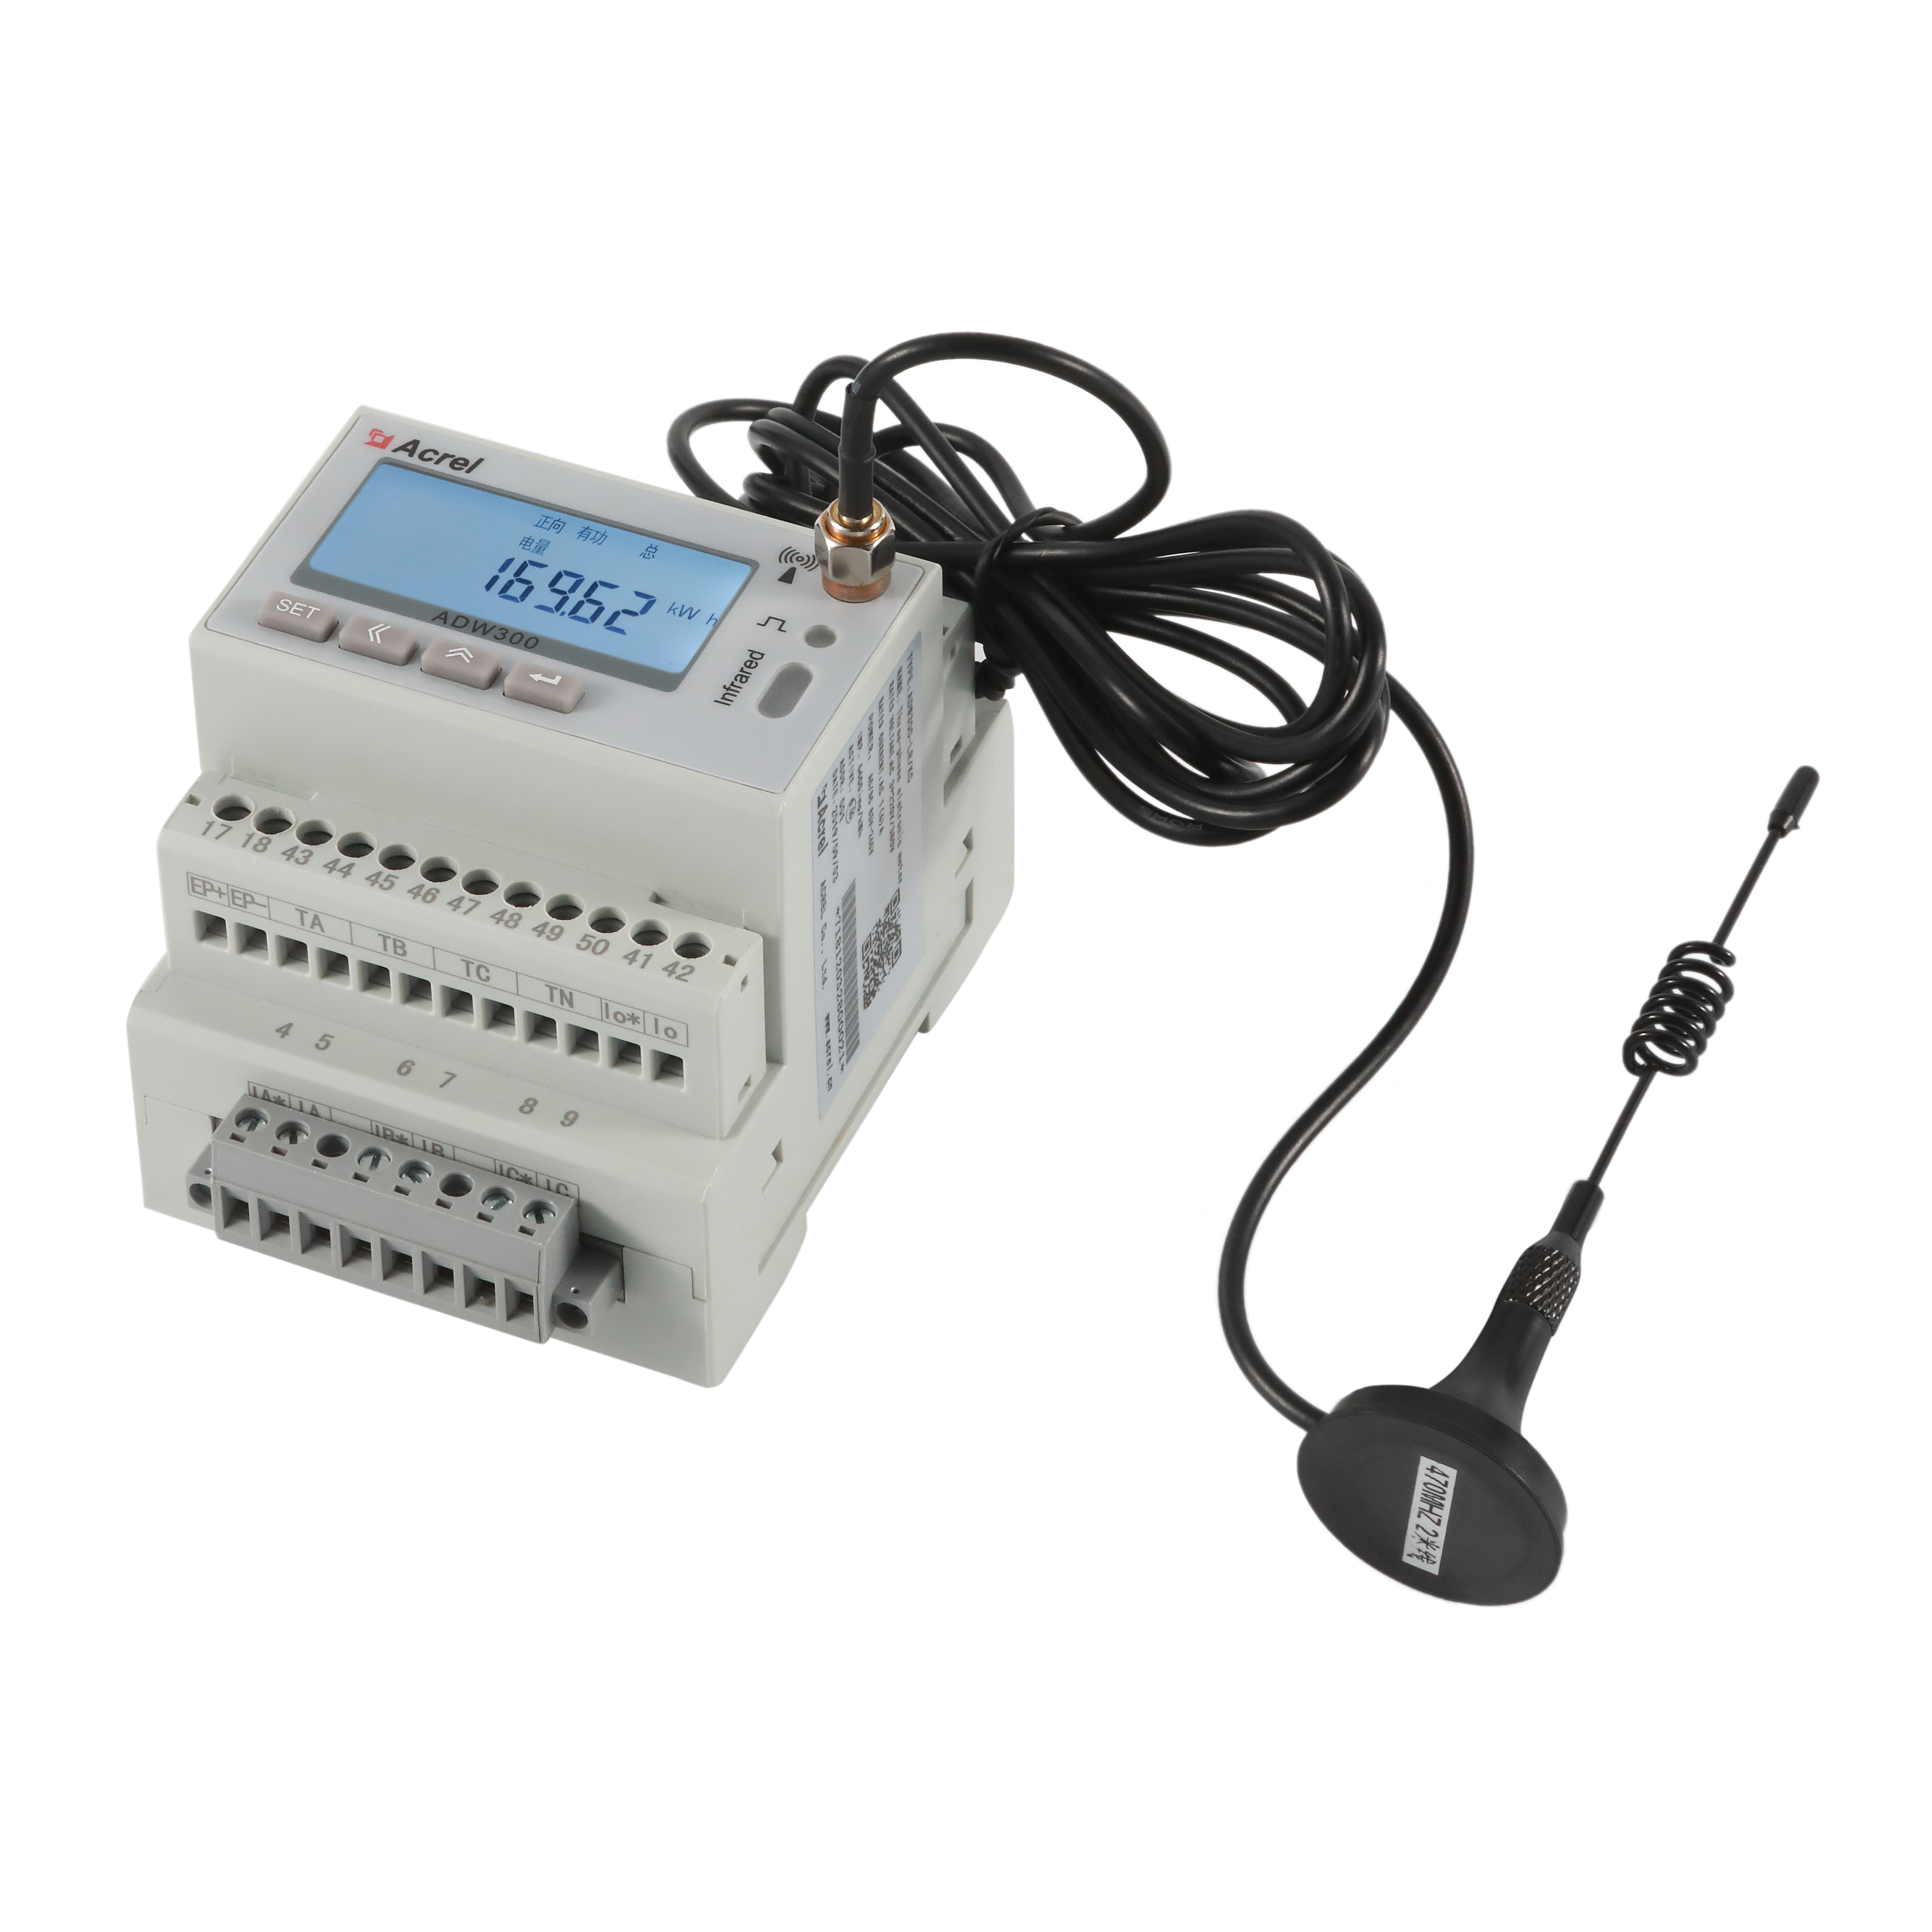 安科瑞ADW300/K无线计量电表EIOT能源物联网平台免调试易部署